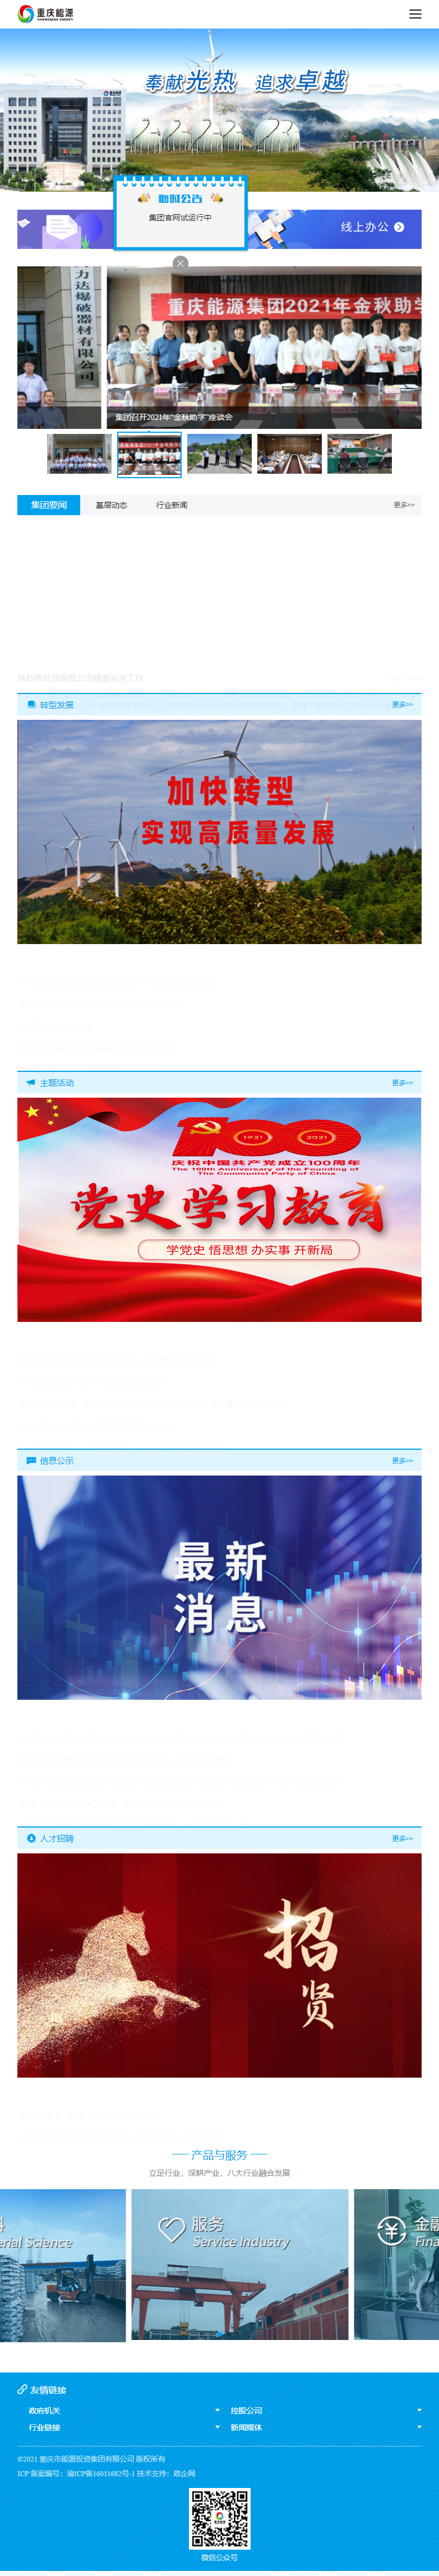 重庆市能源投资集团有限公司网站案例